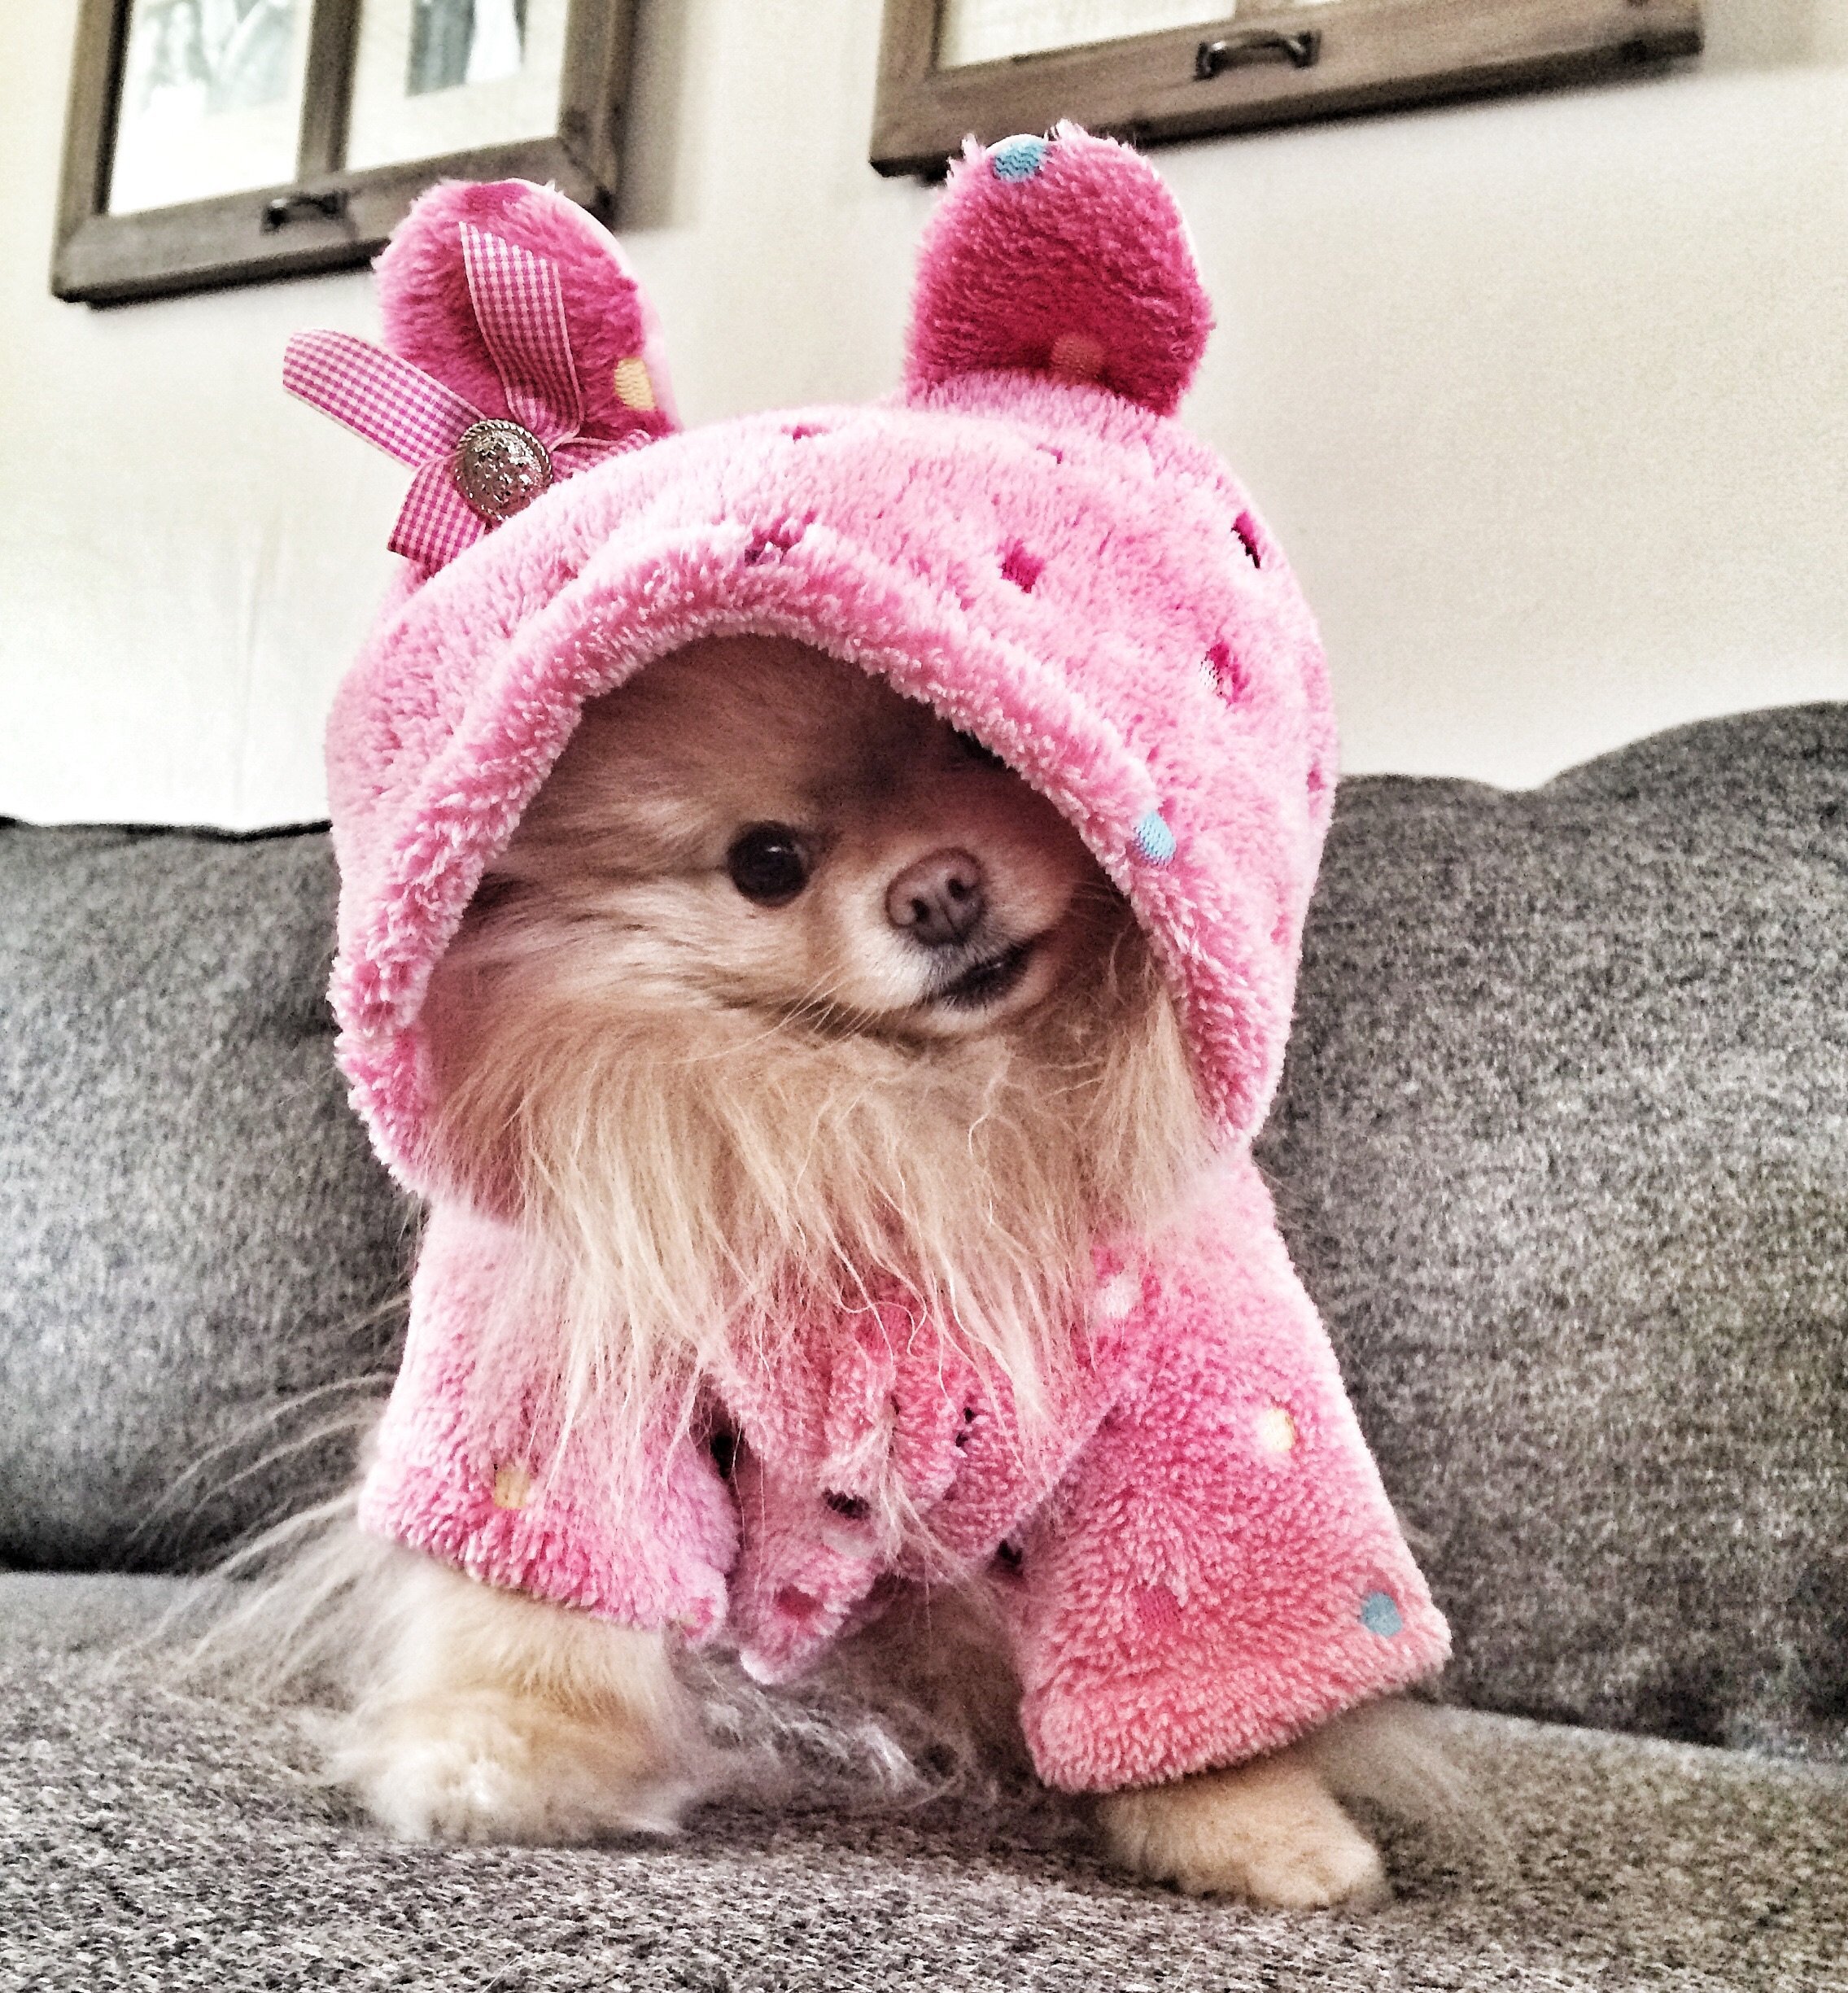 Животное с розовыми волосами. Милые собачки. Милые собачки в розовом. Модные маленькие собачки. Красивая одежда для собак.